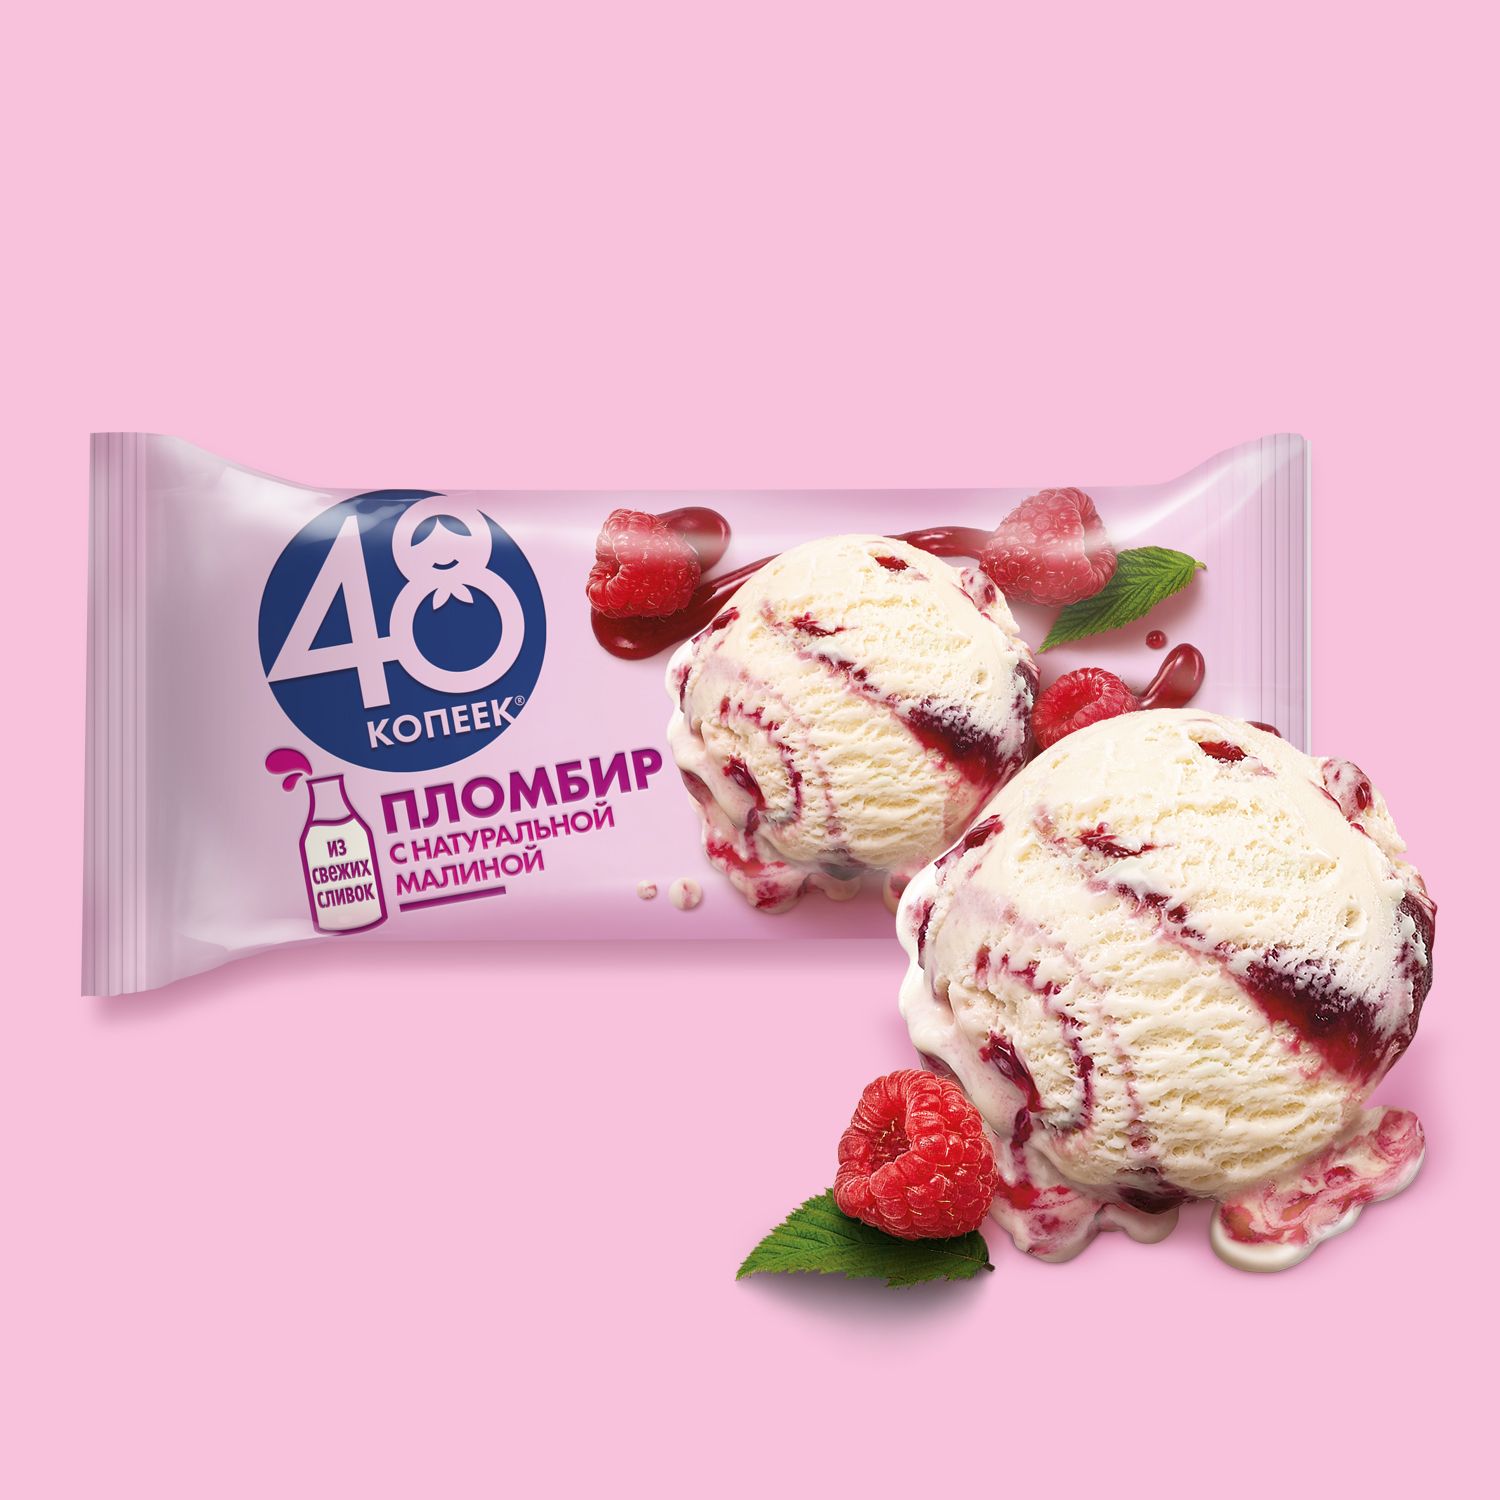 Мороженое Брикет Пломбир с натуральной малиной 48 Копеек, 400 мл — купить в  интернет-магазине OZON с быстрой доставкой